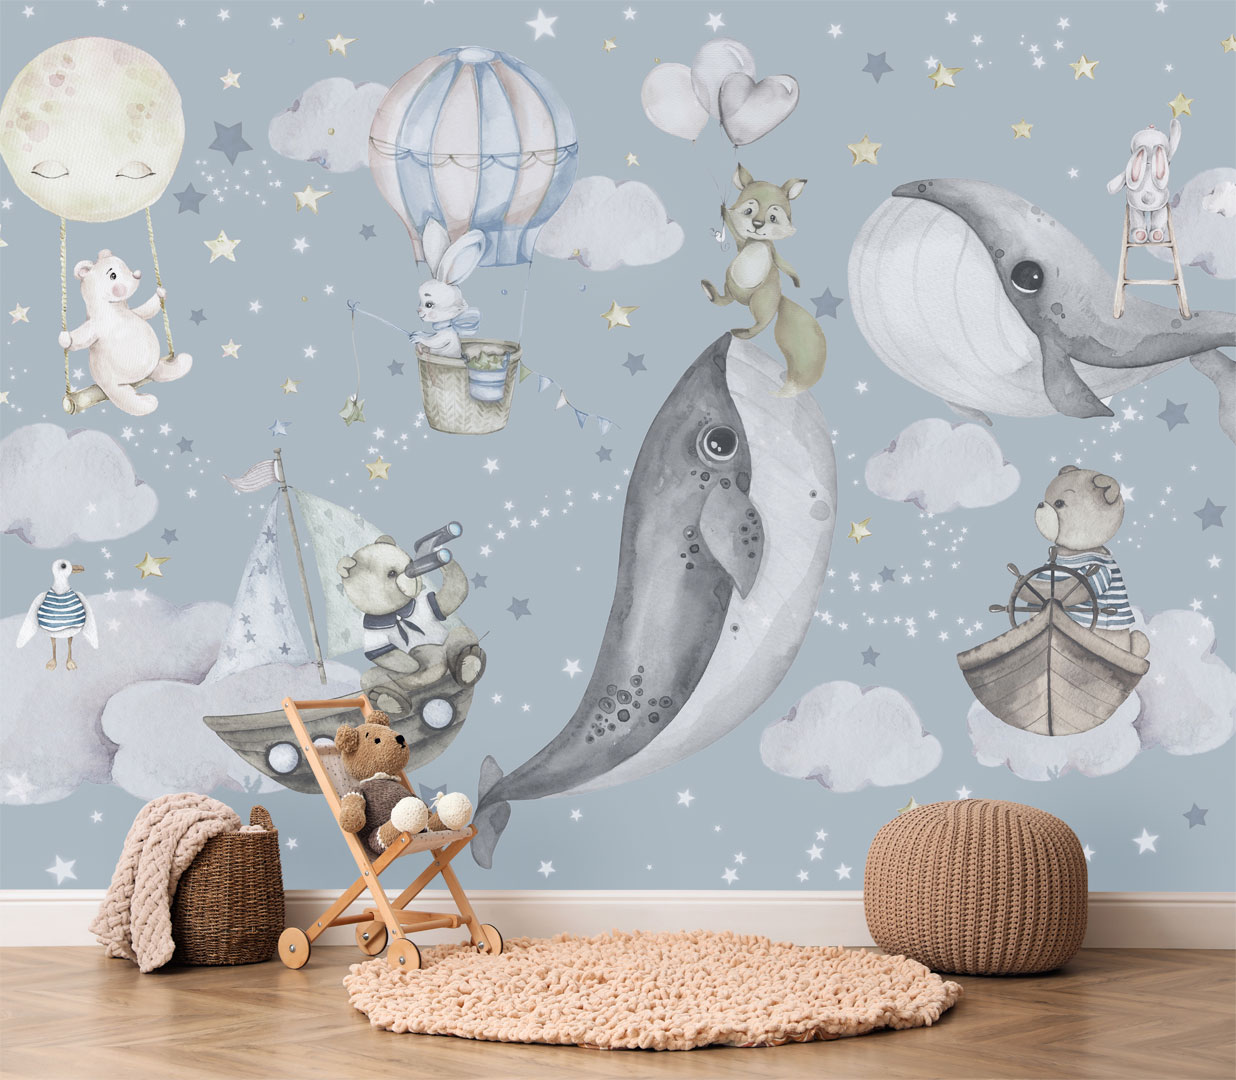 Tapeta dla dzieci, chłopca lub dziewczynki, z wielorybami i zwierzętami w chmurach, POLOWANIE NA GWIAZDY - Dekoori zdjęcie 2